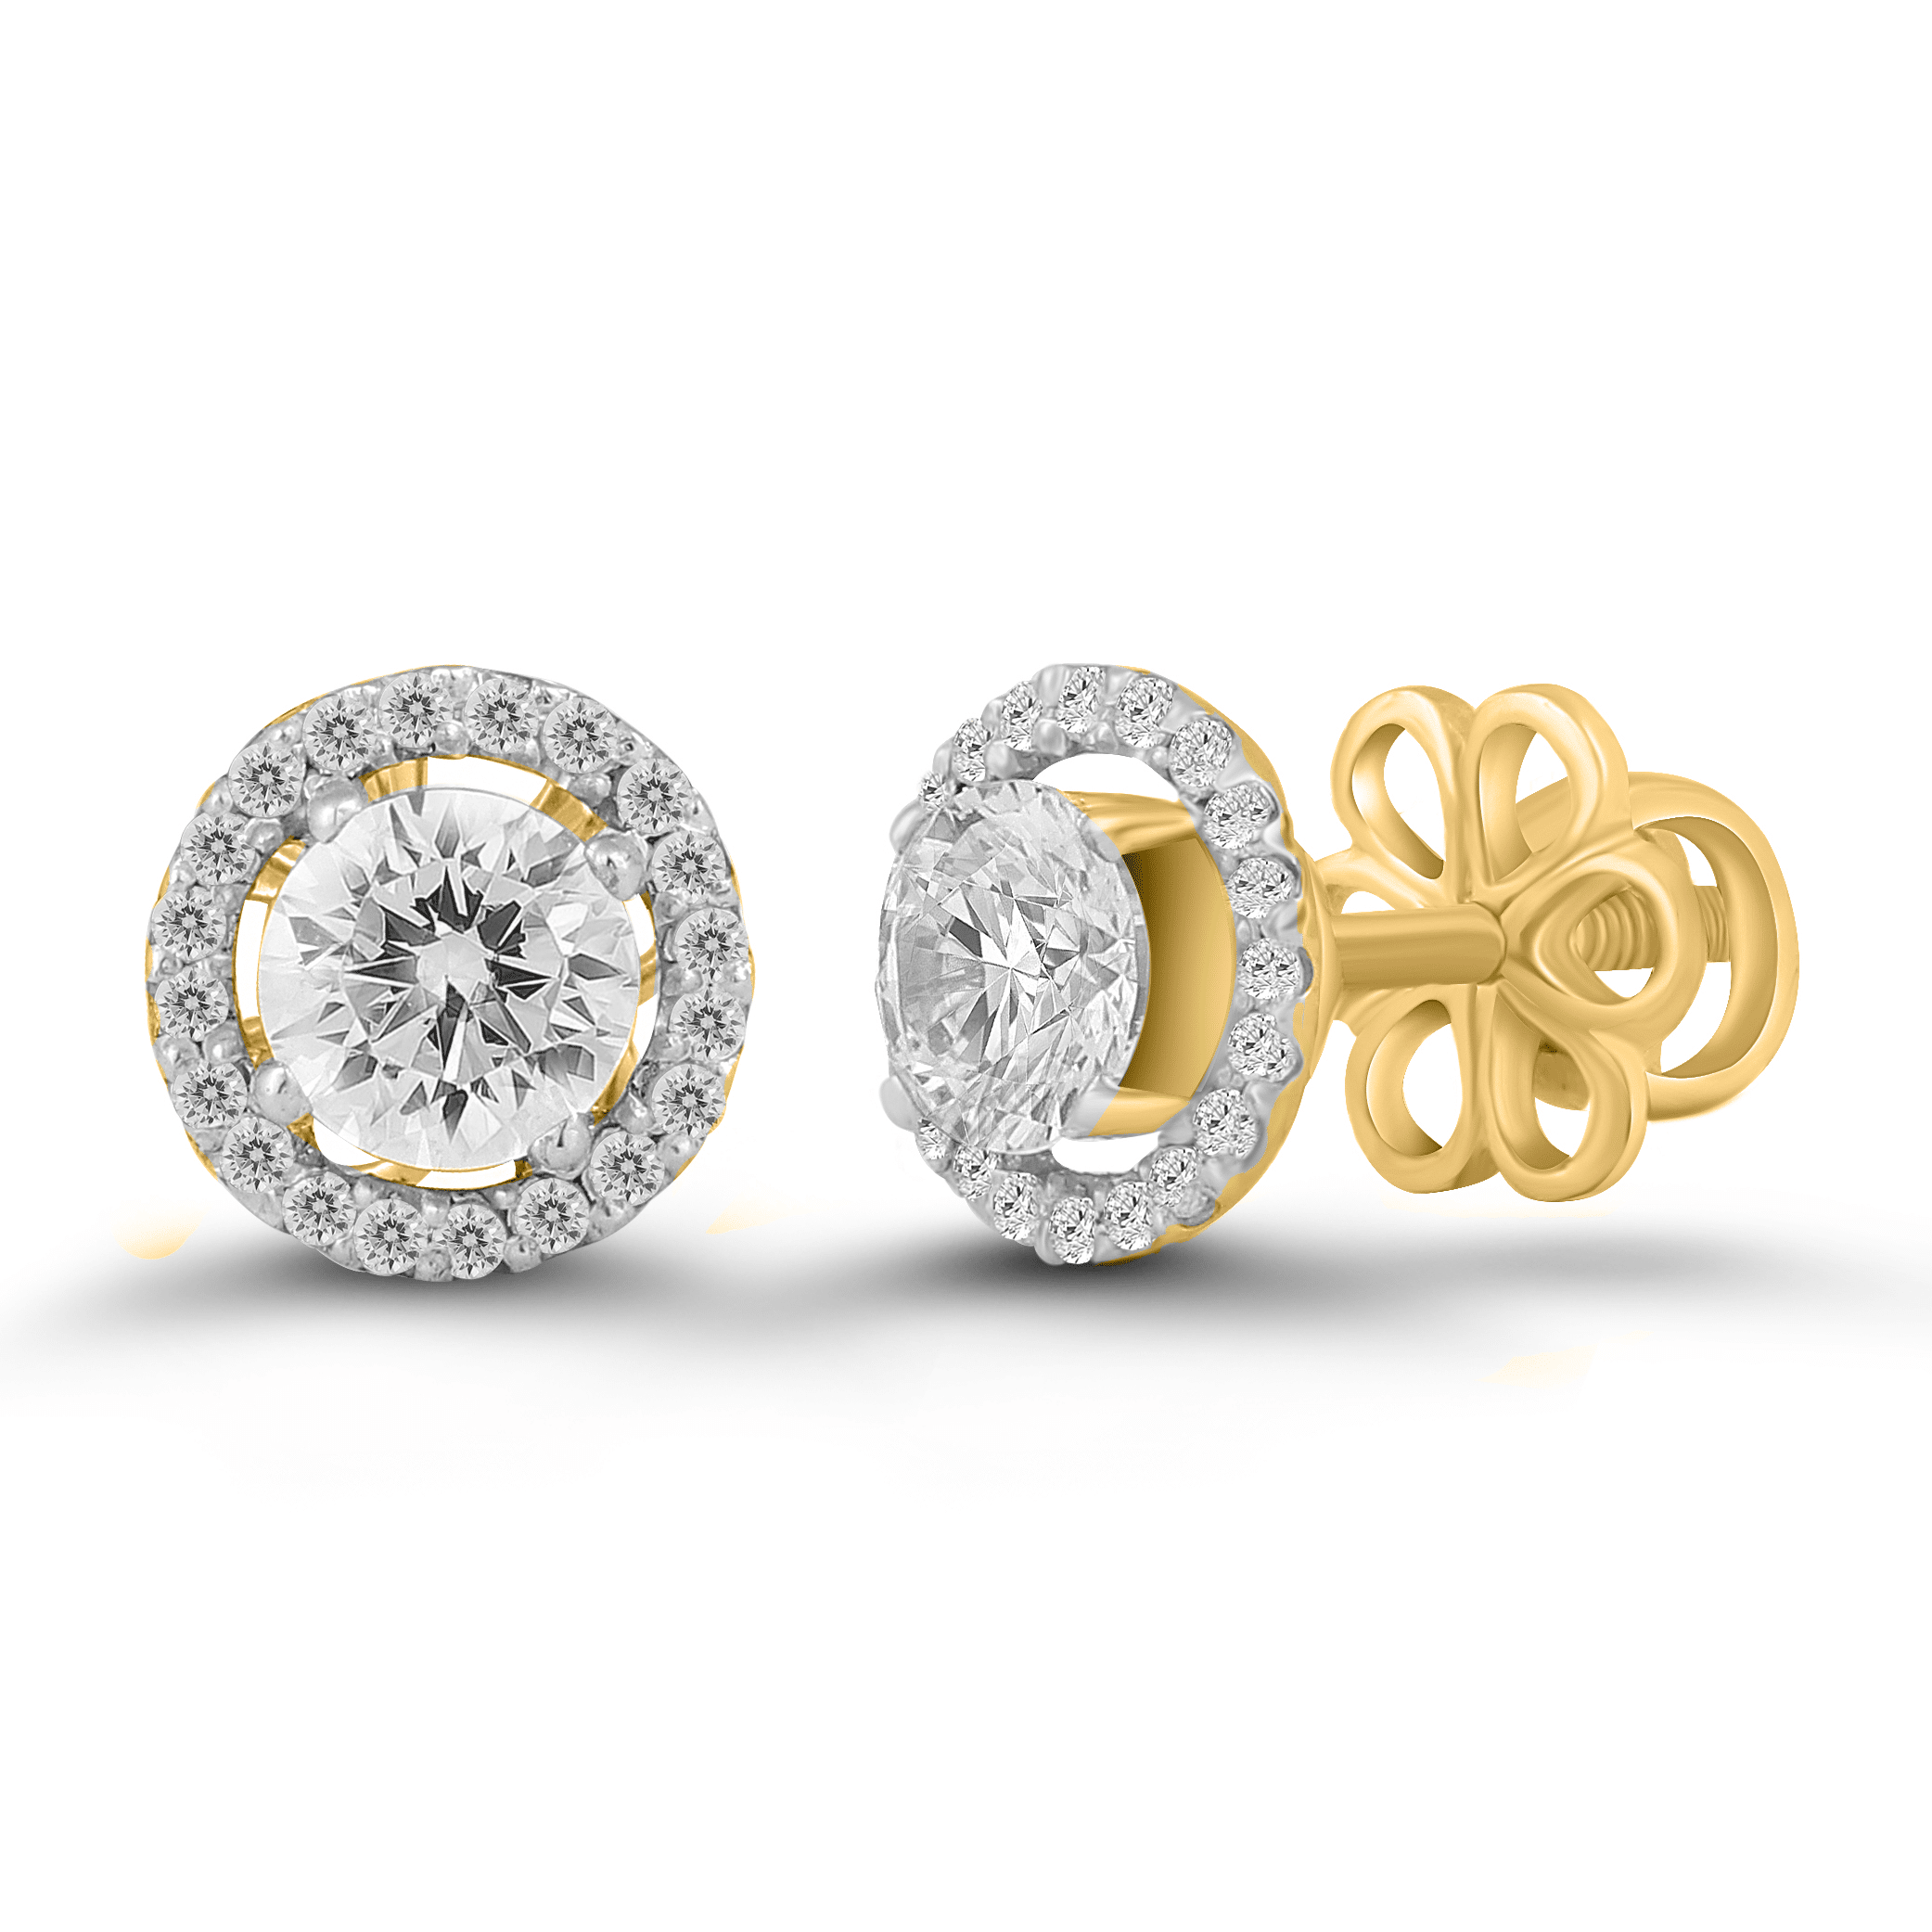 Diamond Earring / 14k Gold Earring / Diamond Cluster Earring / Rose Gold  Flower Design Diamond Earrings / Anniversary Gift Idea / Studs - Etsy